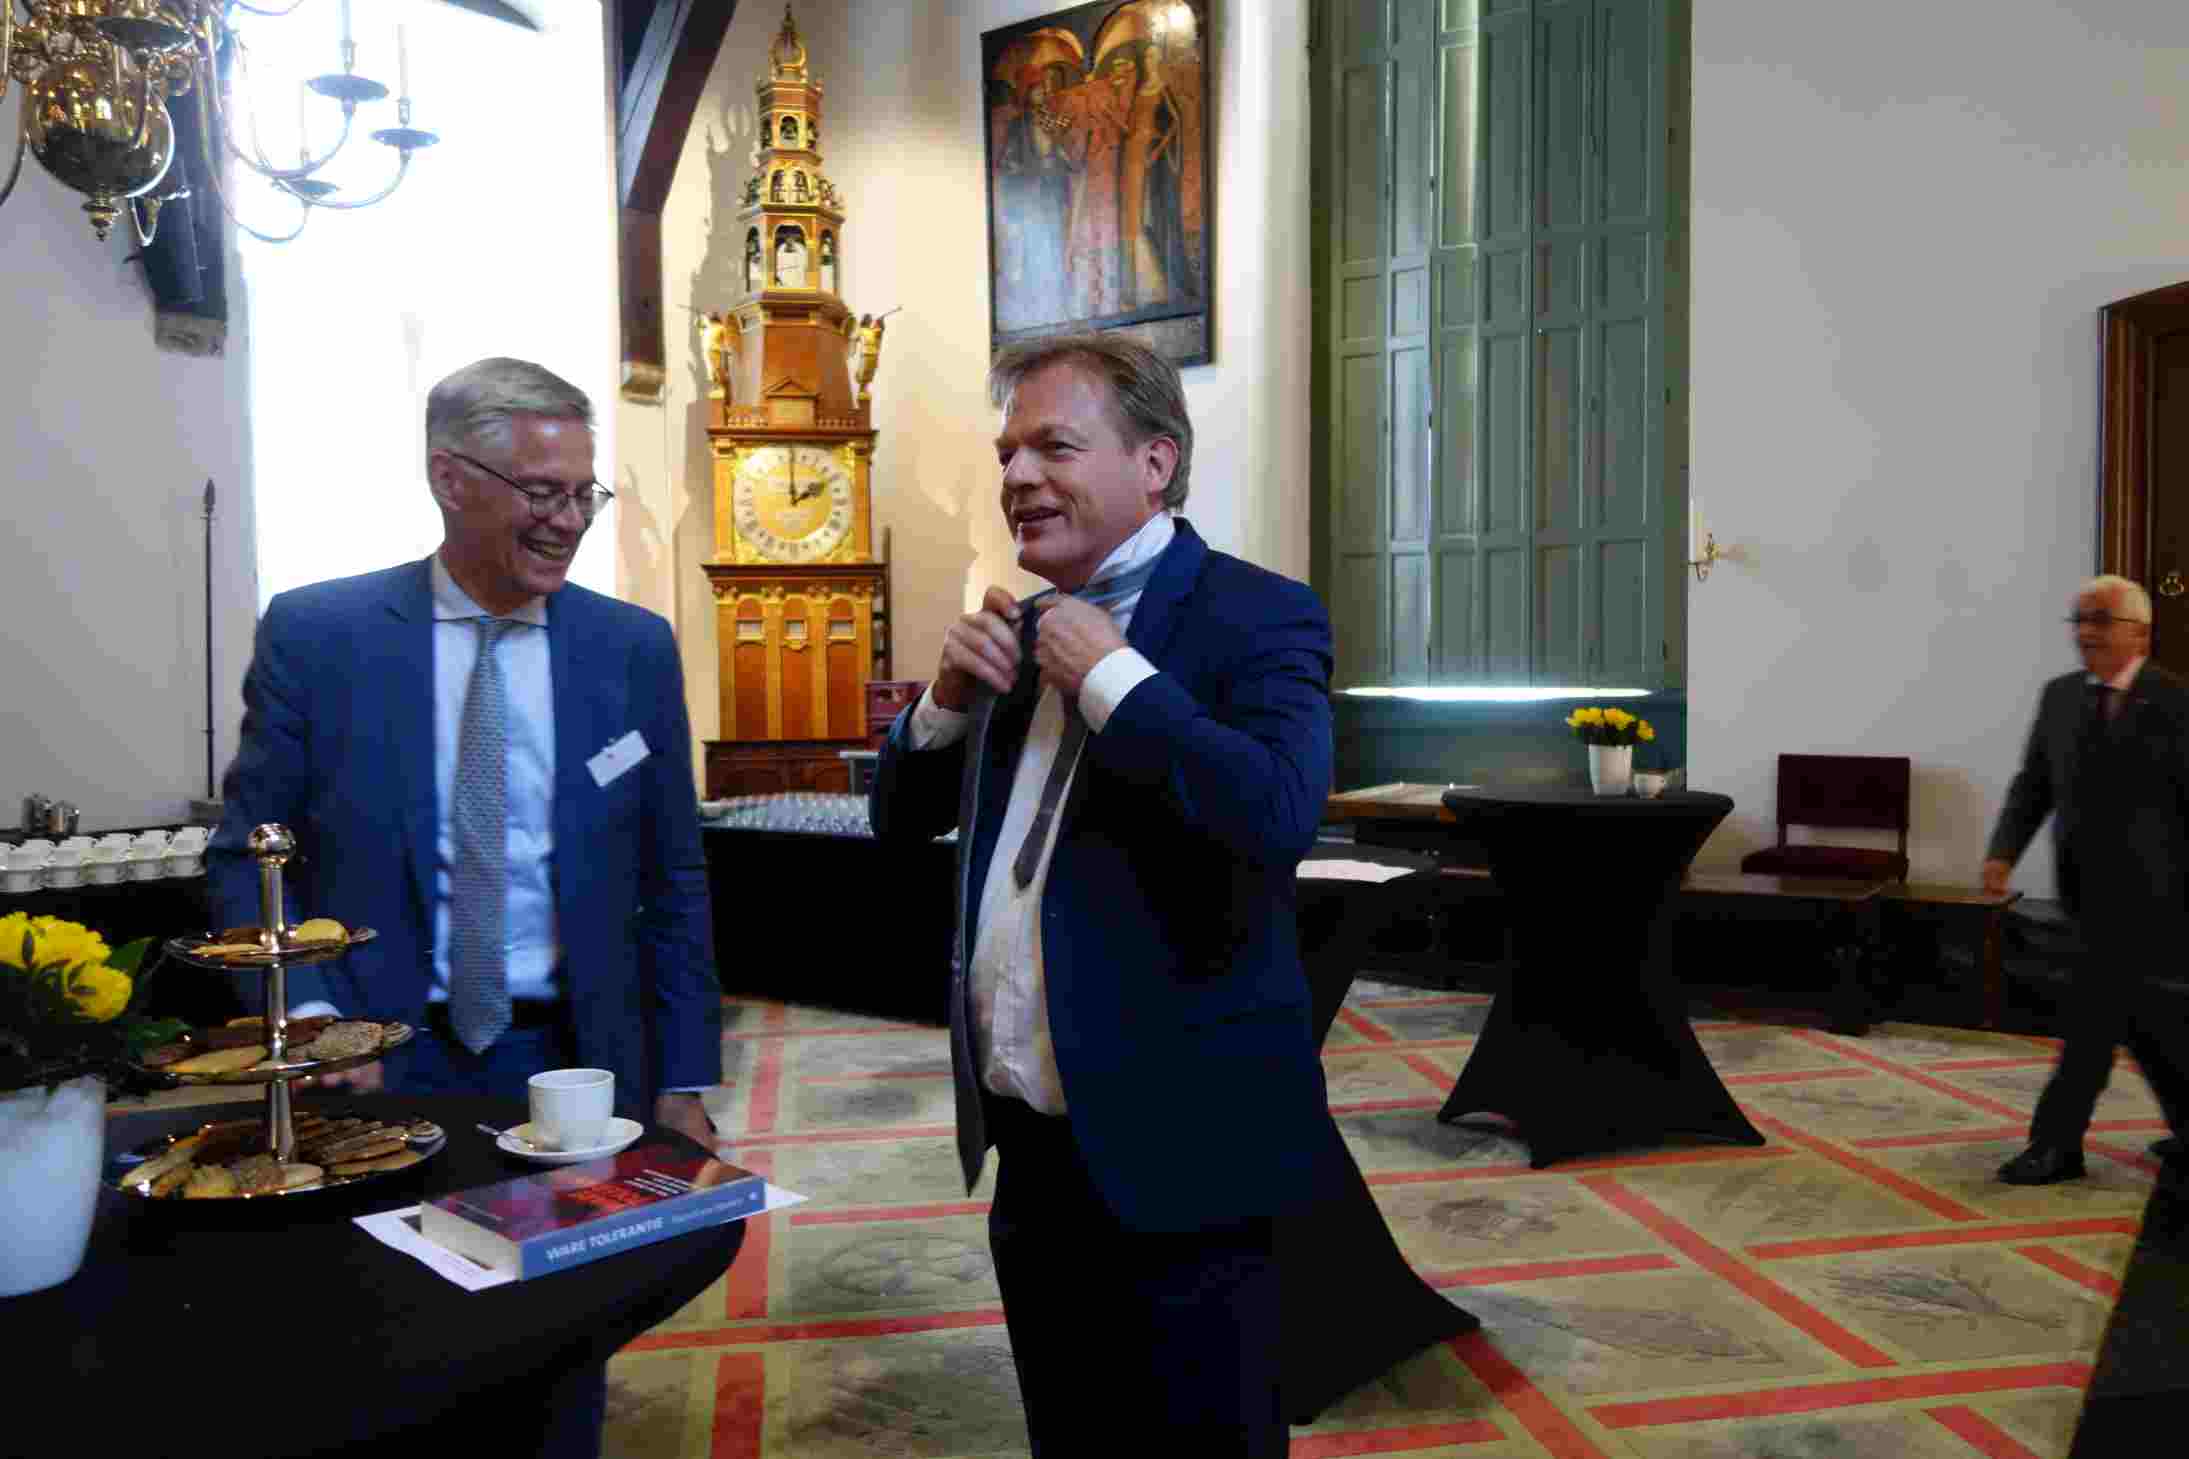 Pieter Omtzigt en Edzo Huisman, secretaris van de Coornhert Stichting Haarlem